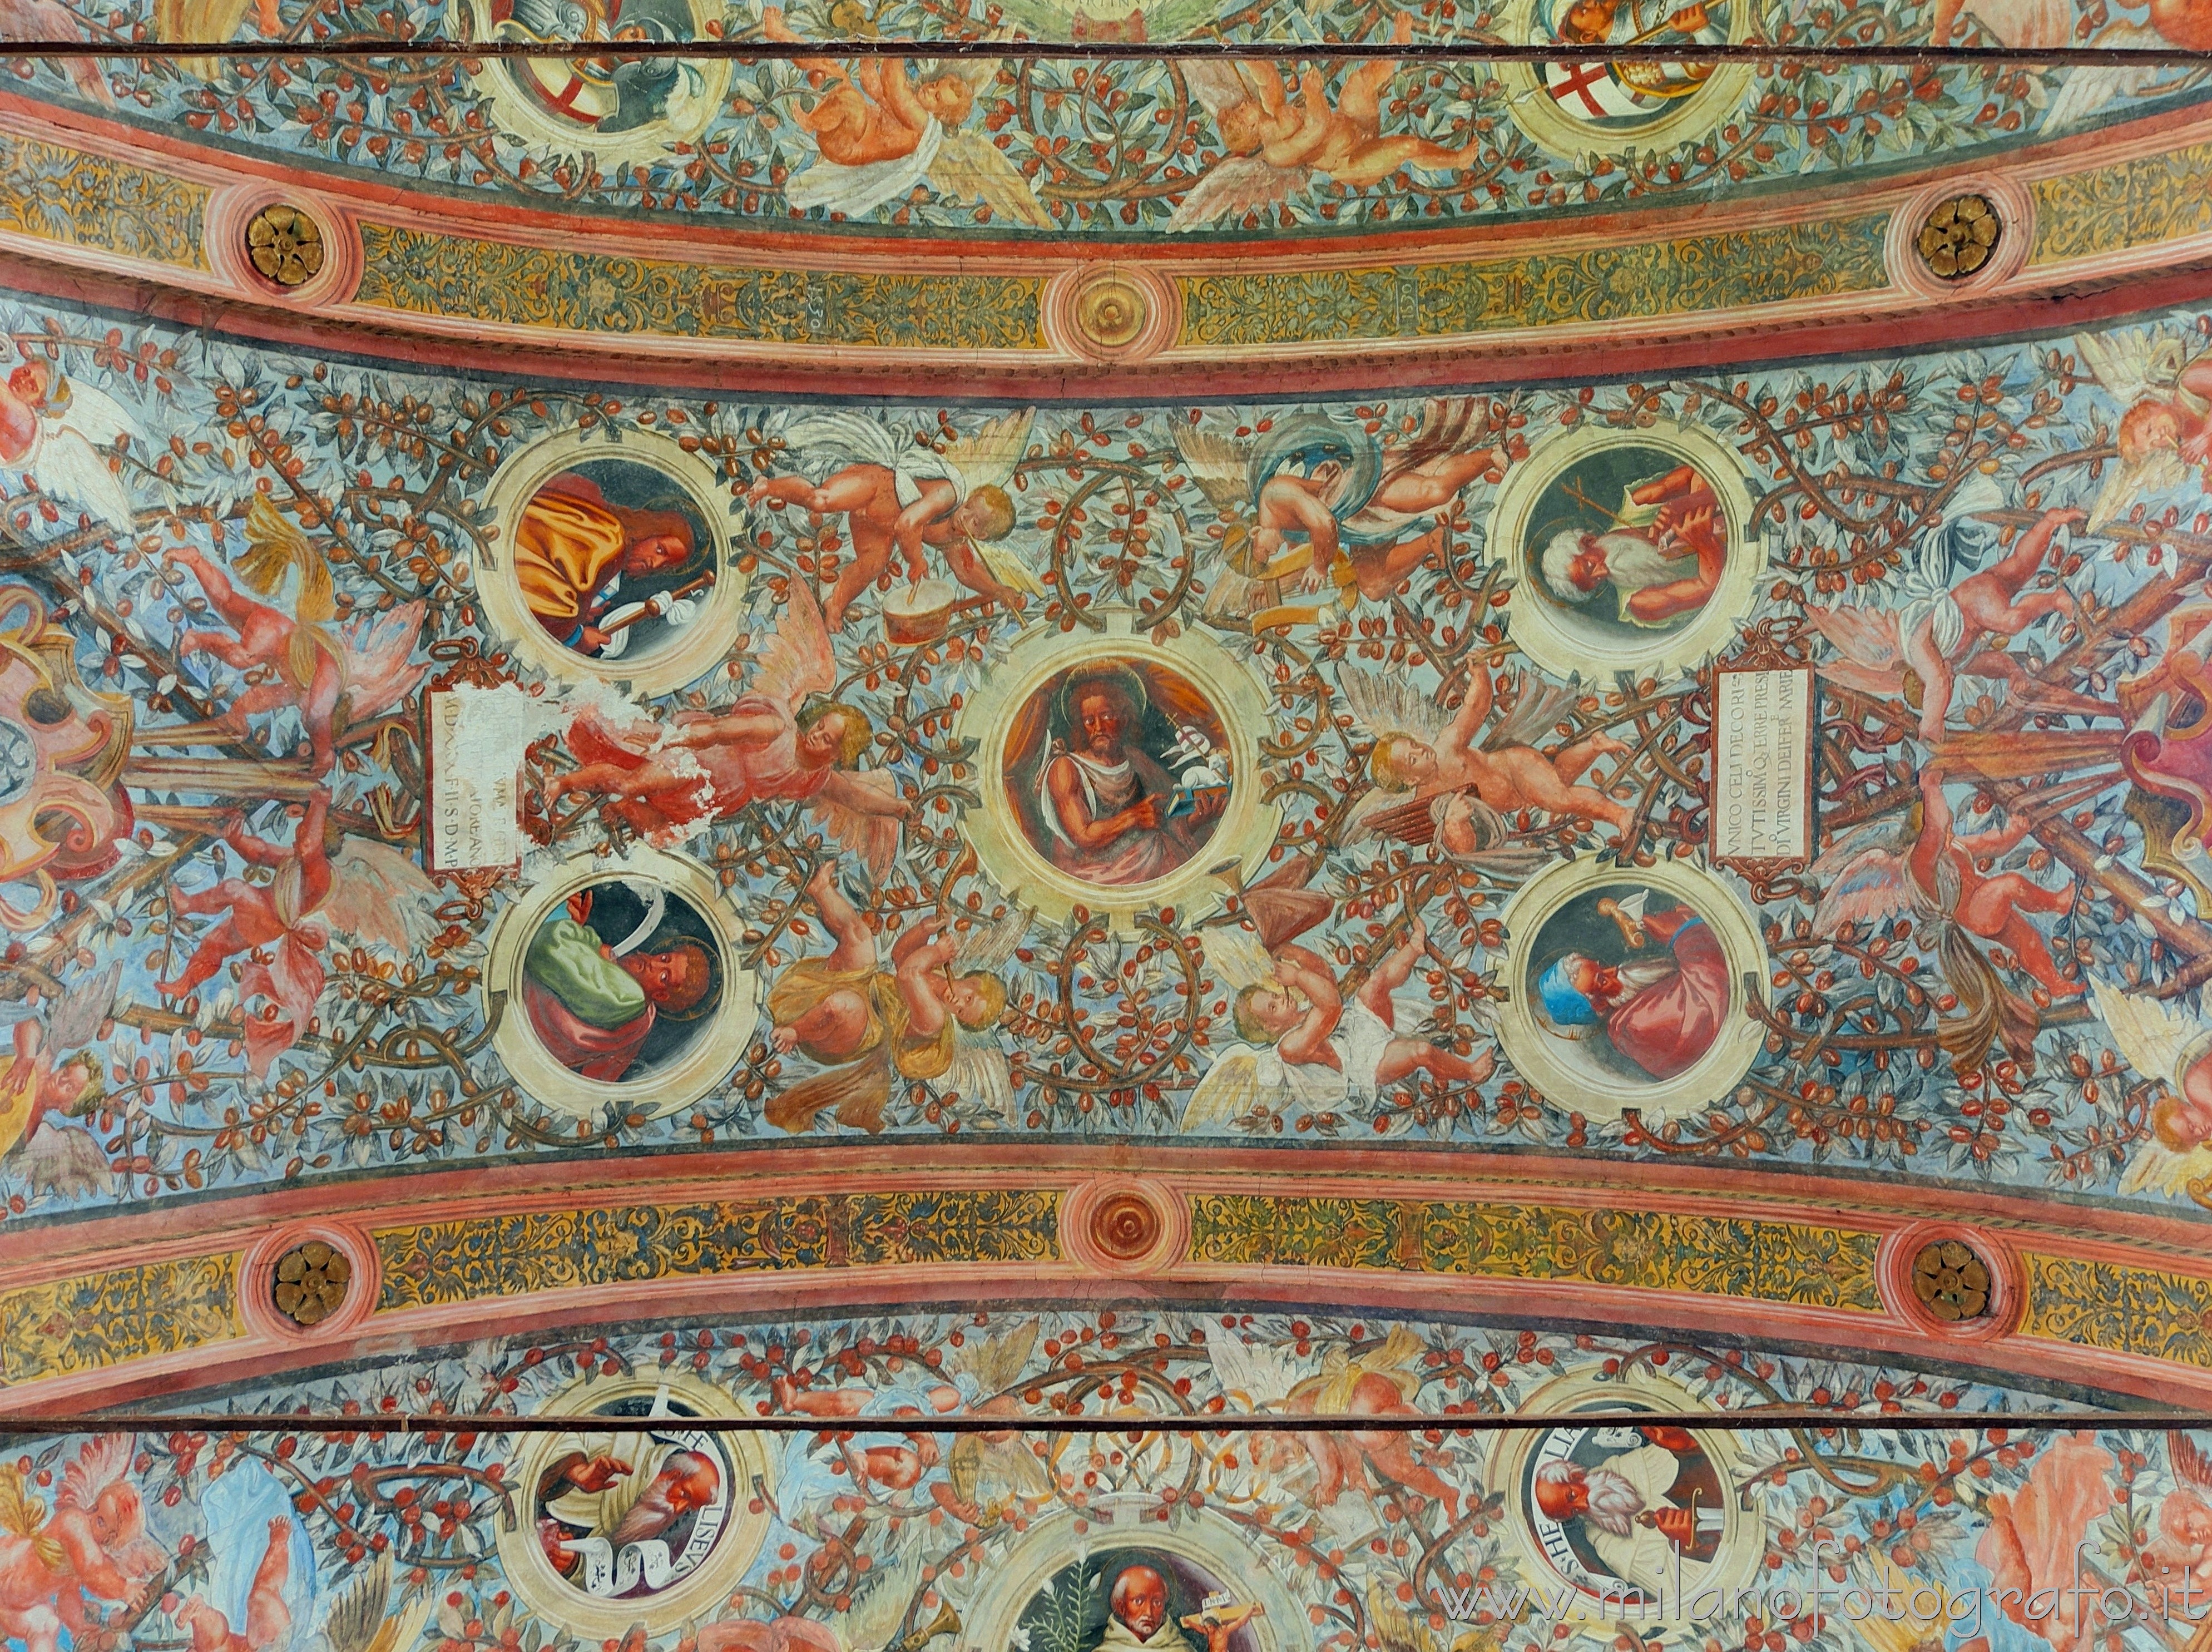 Soncino (Cremona): Dettaglio del soffitto della Chiesa di Santa Maria delle Grazie - Soncino (Cremona)